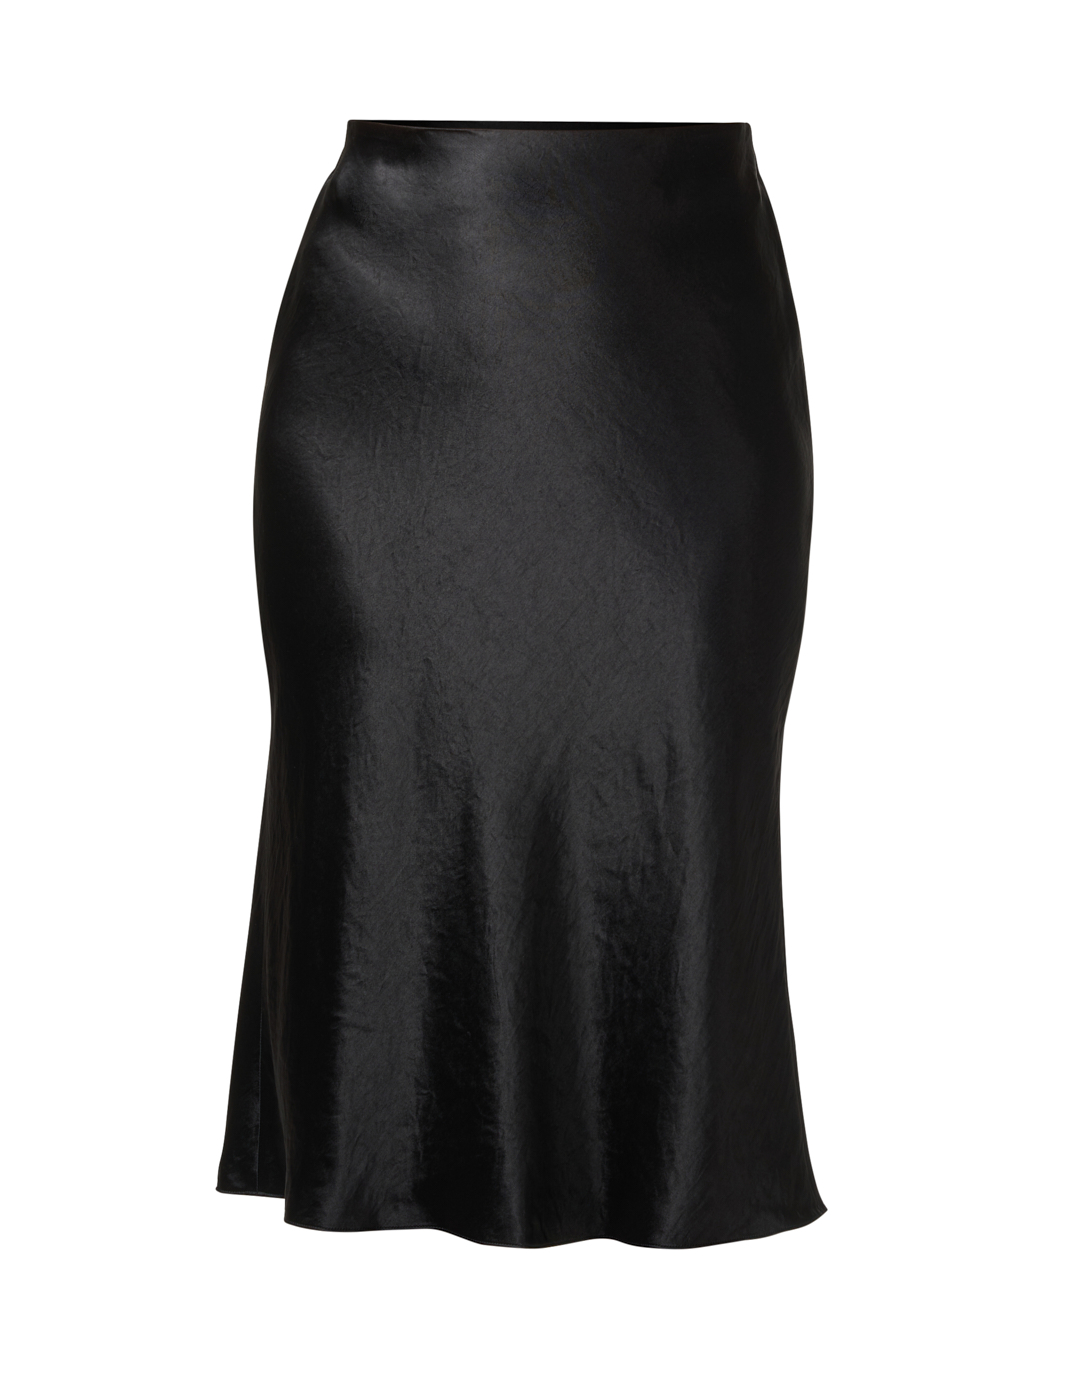 Kendall Slip Skirt  Black Silk Bias Cut Slip Skirt